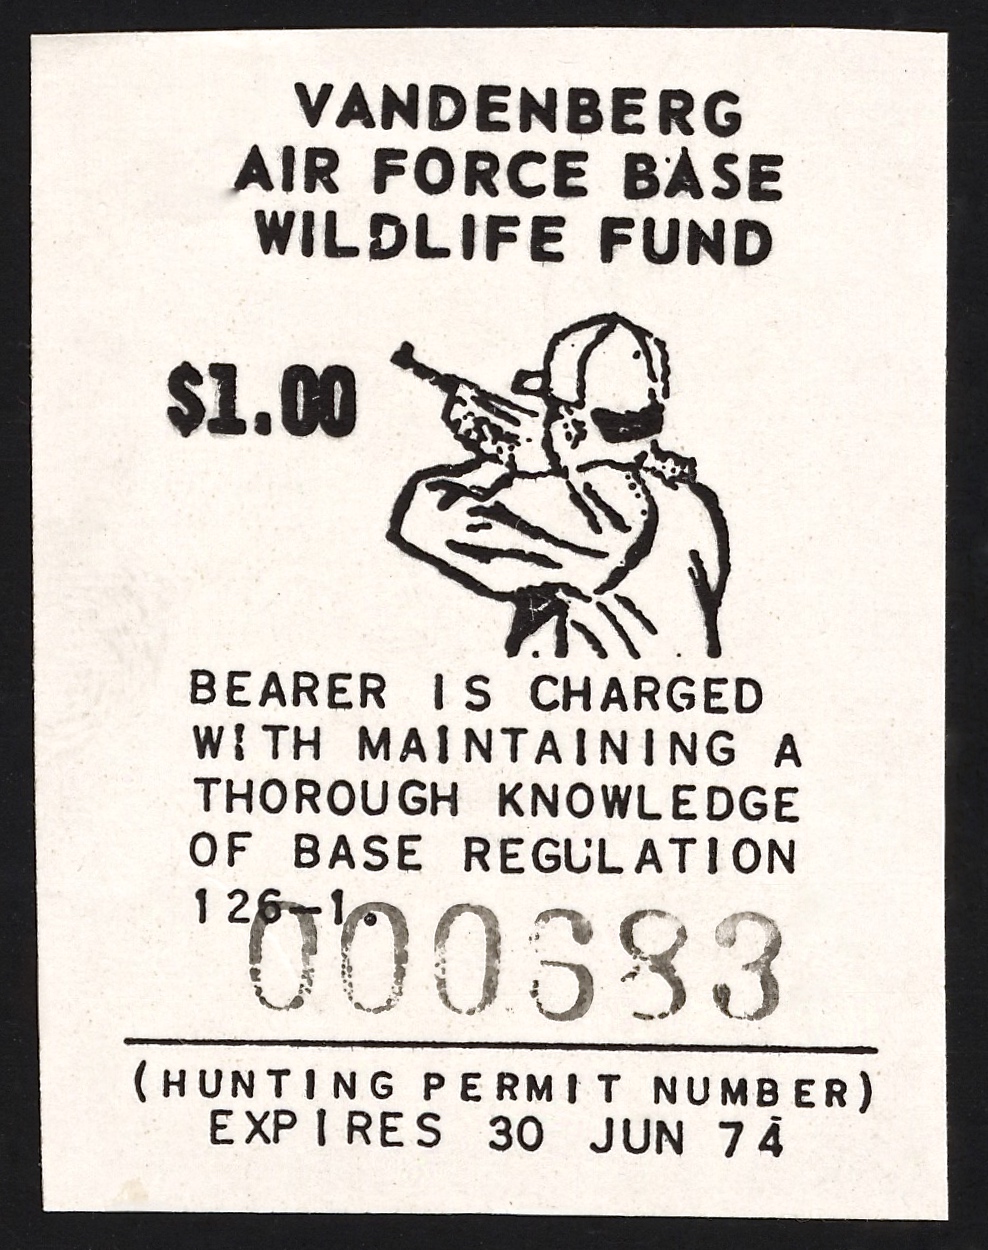 1973-74 VAFB Hunting